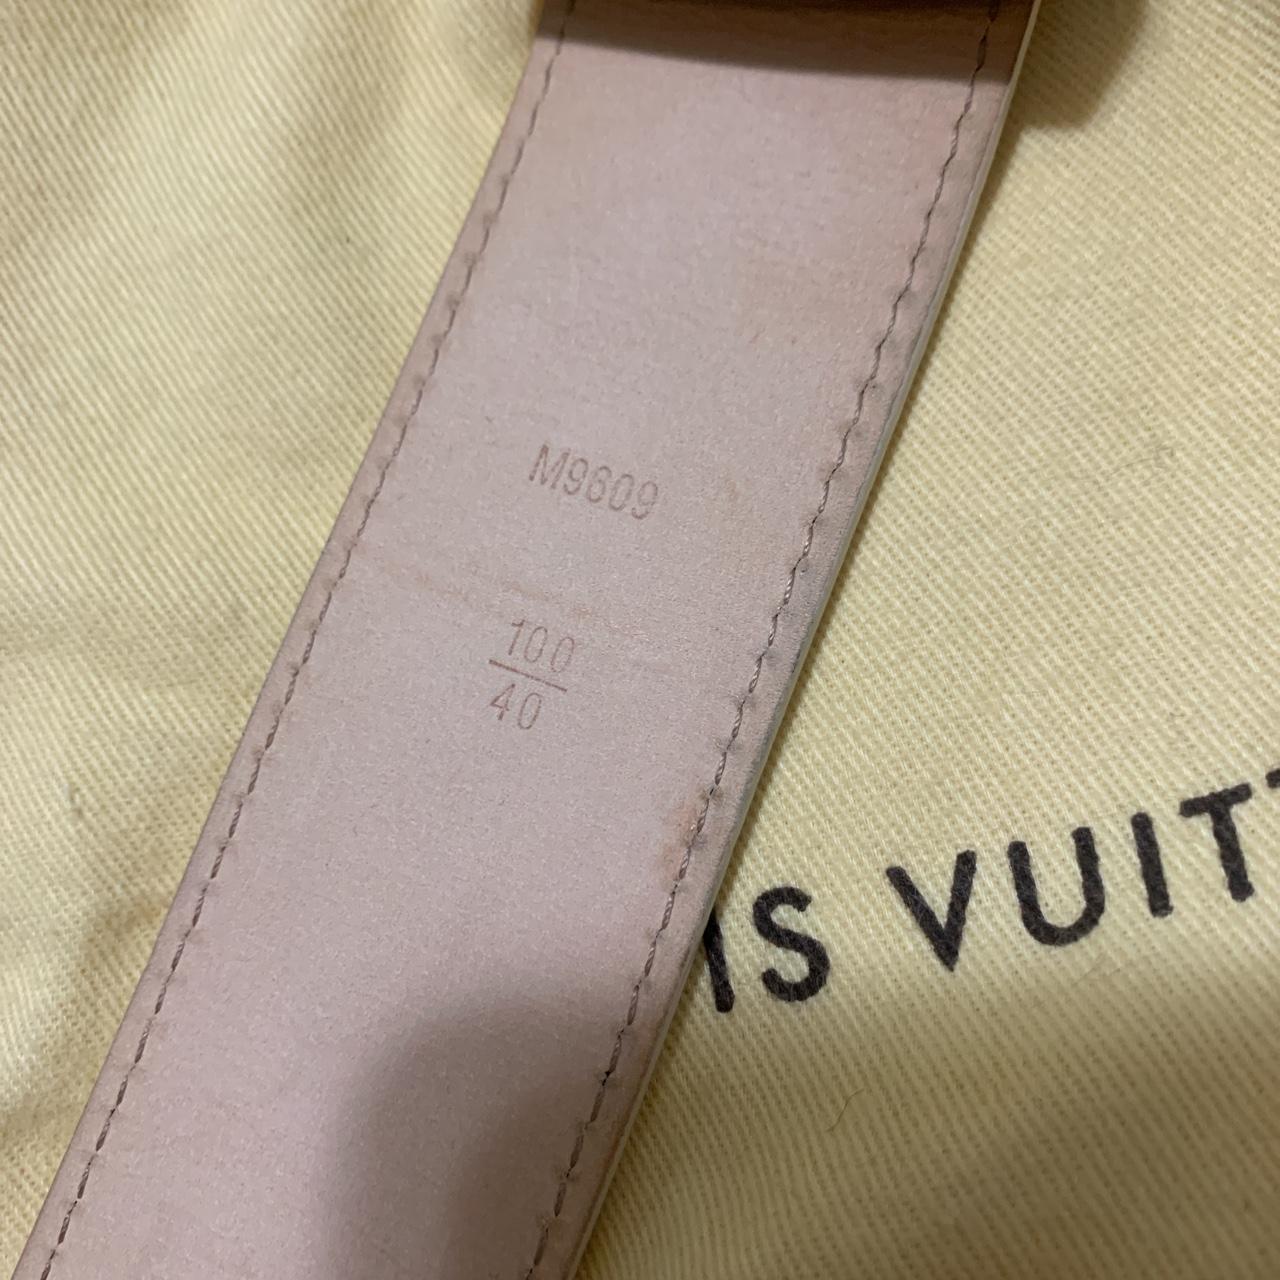 Louis Vuitton Damier Azur Belt - Size 40 - Gold Buckle (62352-1)